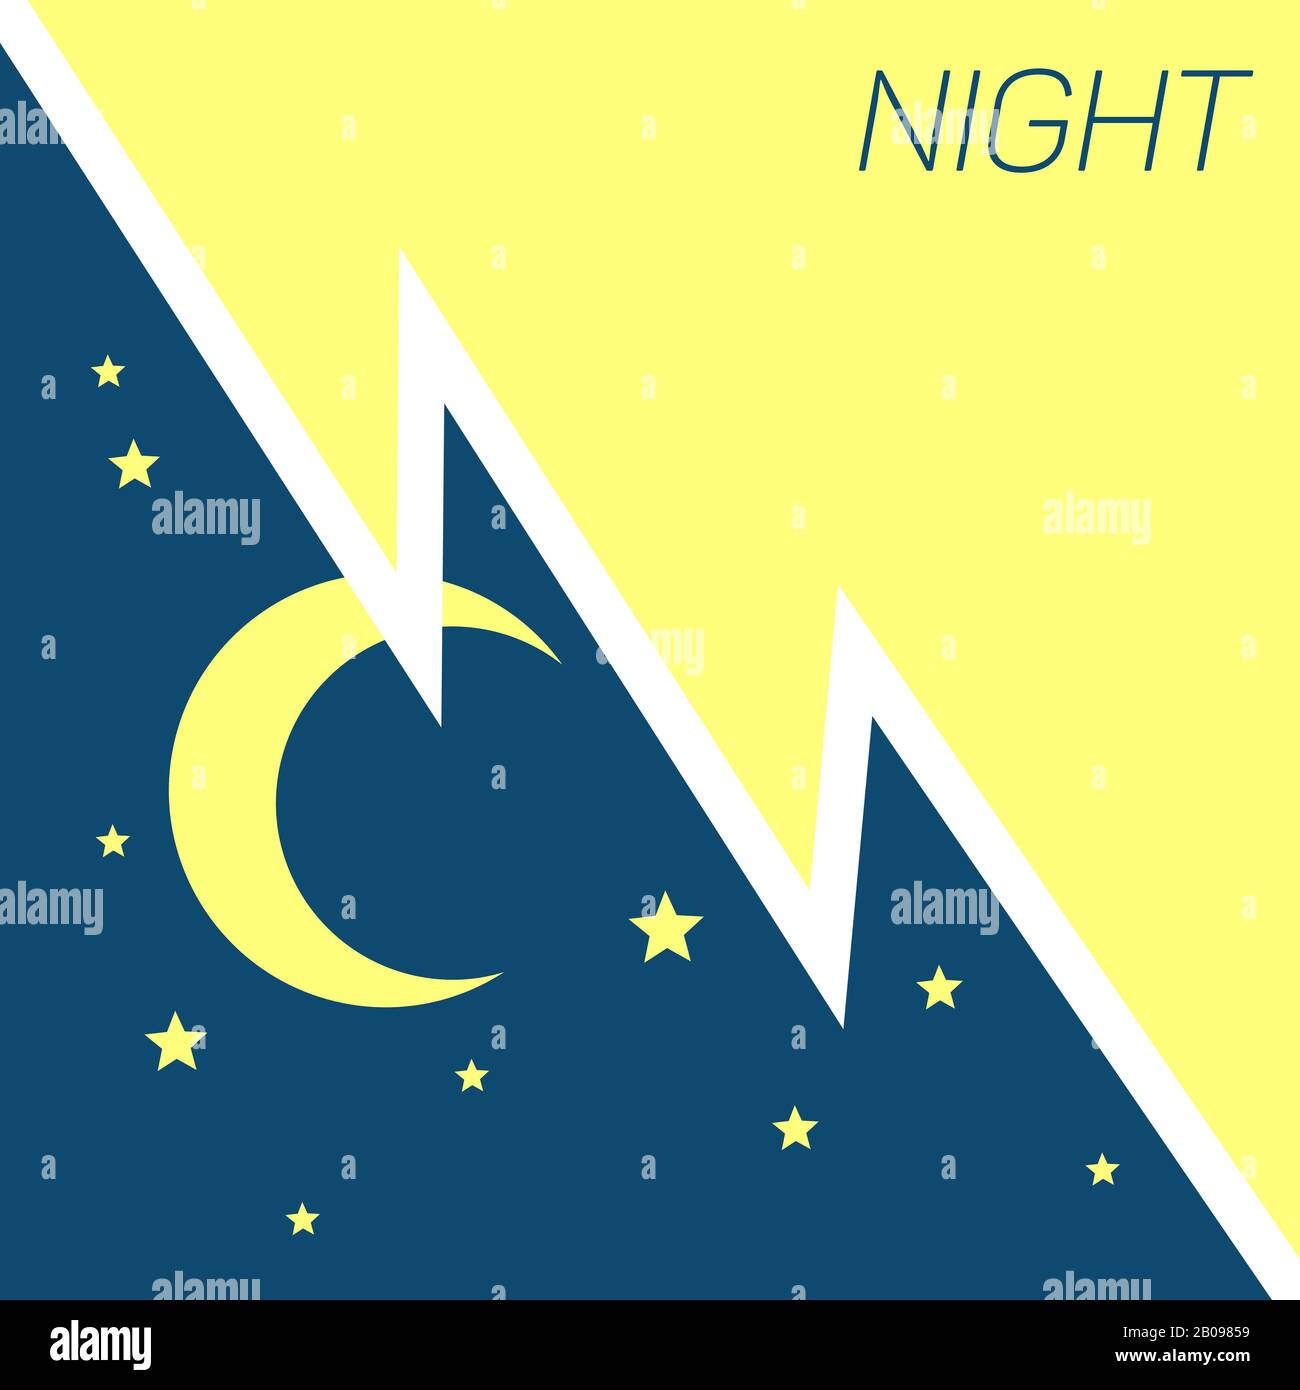 Vektorsichelmond und Sternen-Nachtkonzept. Abbildung: Dunkle Nacht mit Stern Stock Vektor